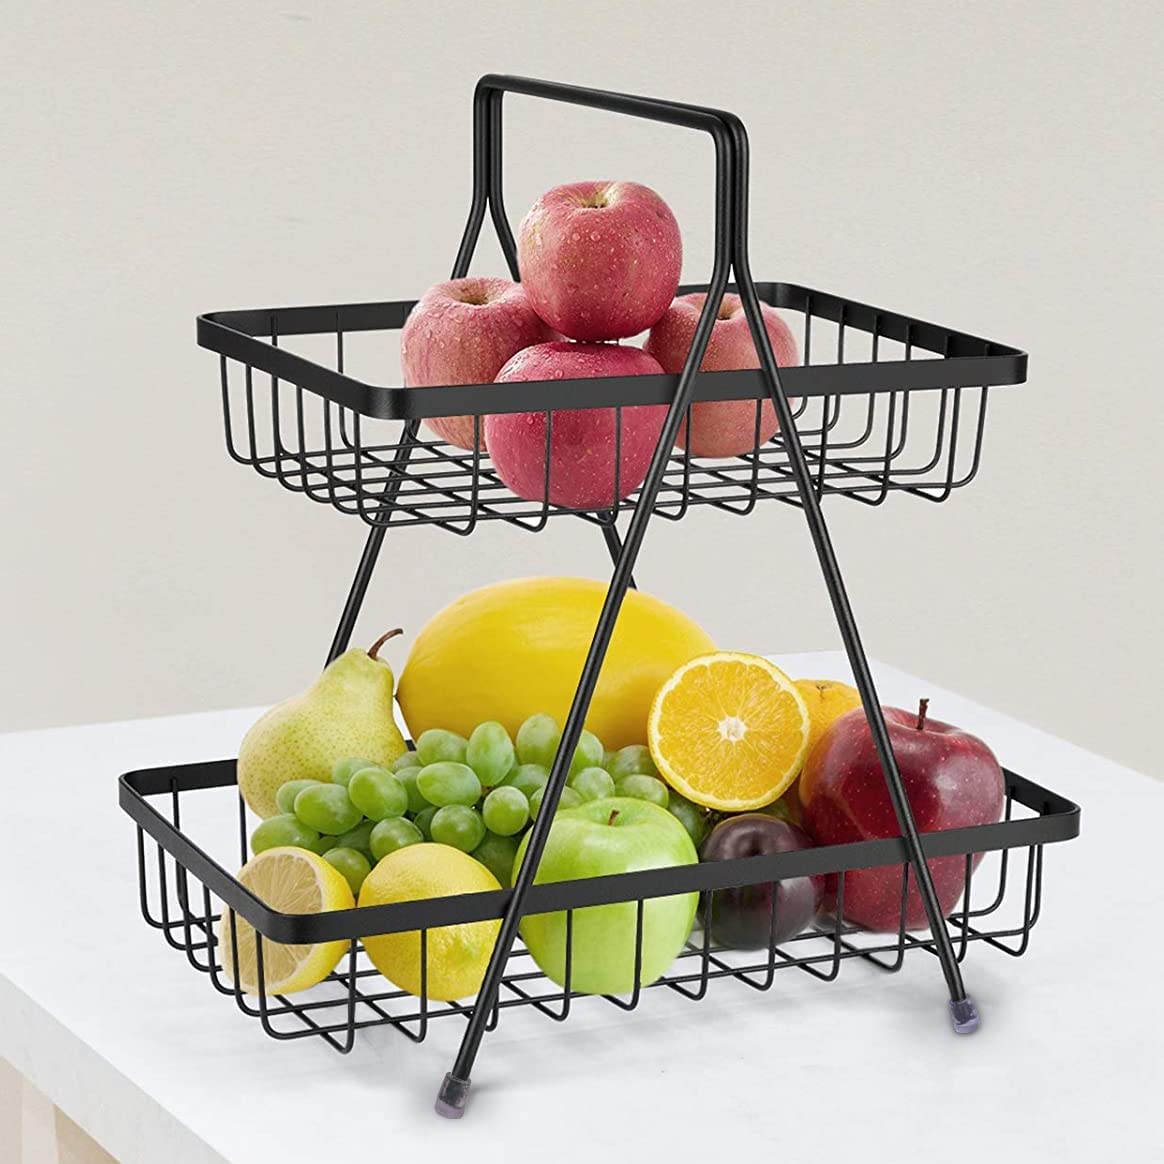 Plantex High Grade Steel 2-Tier Fruit & Vegetable Basket for Dining Table/Kitchen (Black)